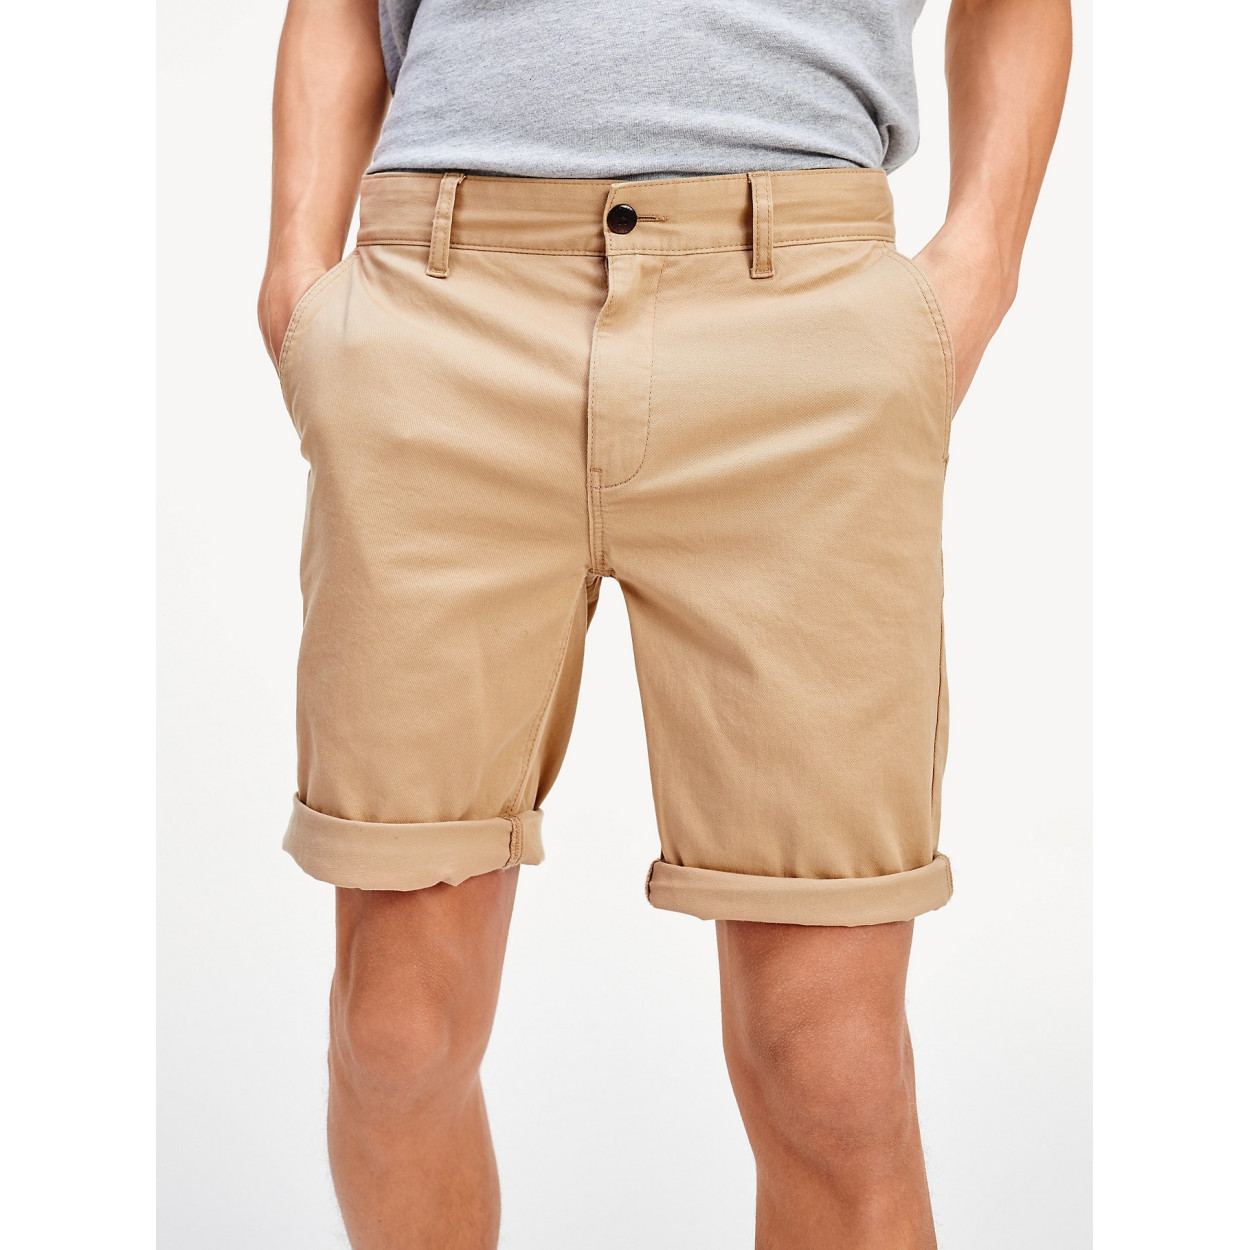 Les umes Shorts Classique Bermuda Chino Homme Stretch Confortable sans Pince Coupe Ajustée Shorts Styles fondamentaux